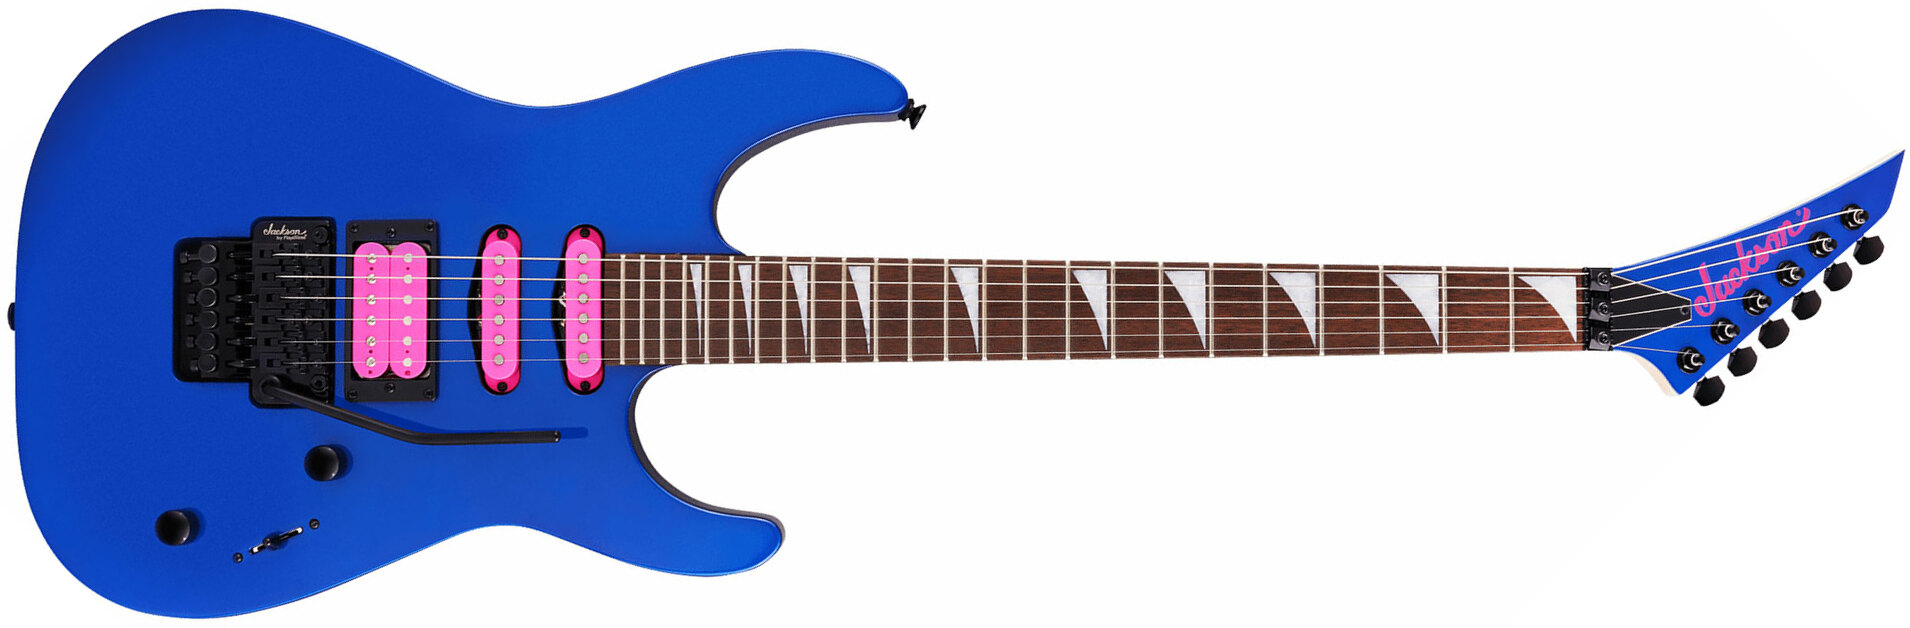 Jackson Dinky Dk3xr Hss Fr Lau - Cobalt Blue - Str shape electric guitar - Main picture